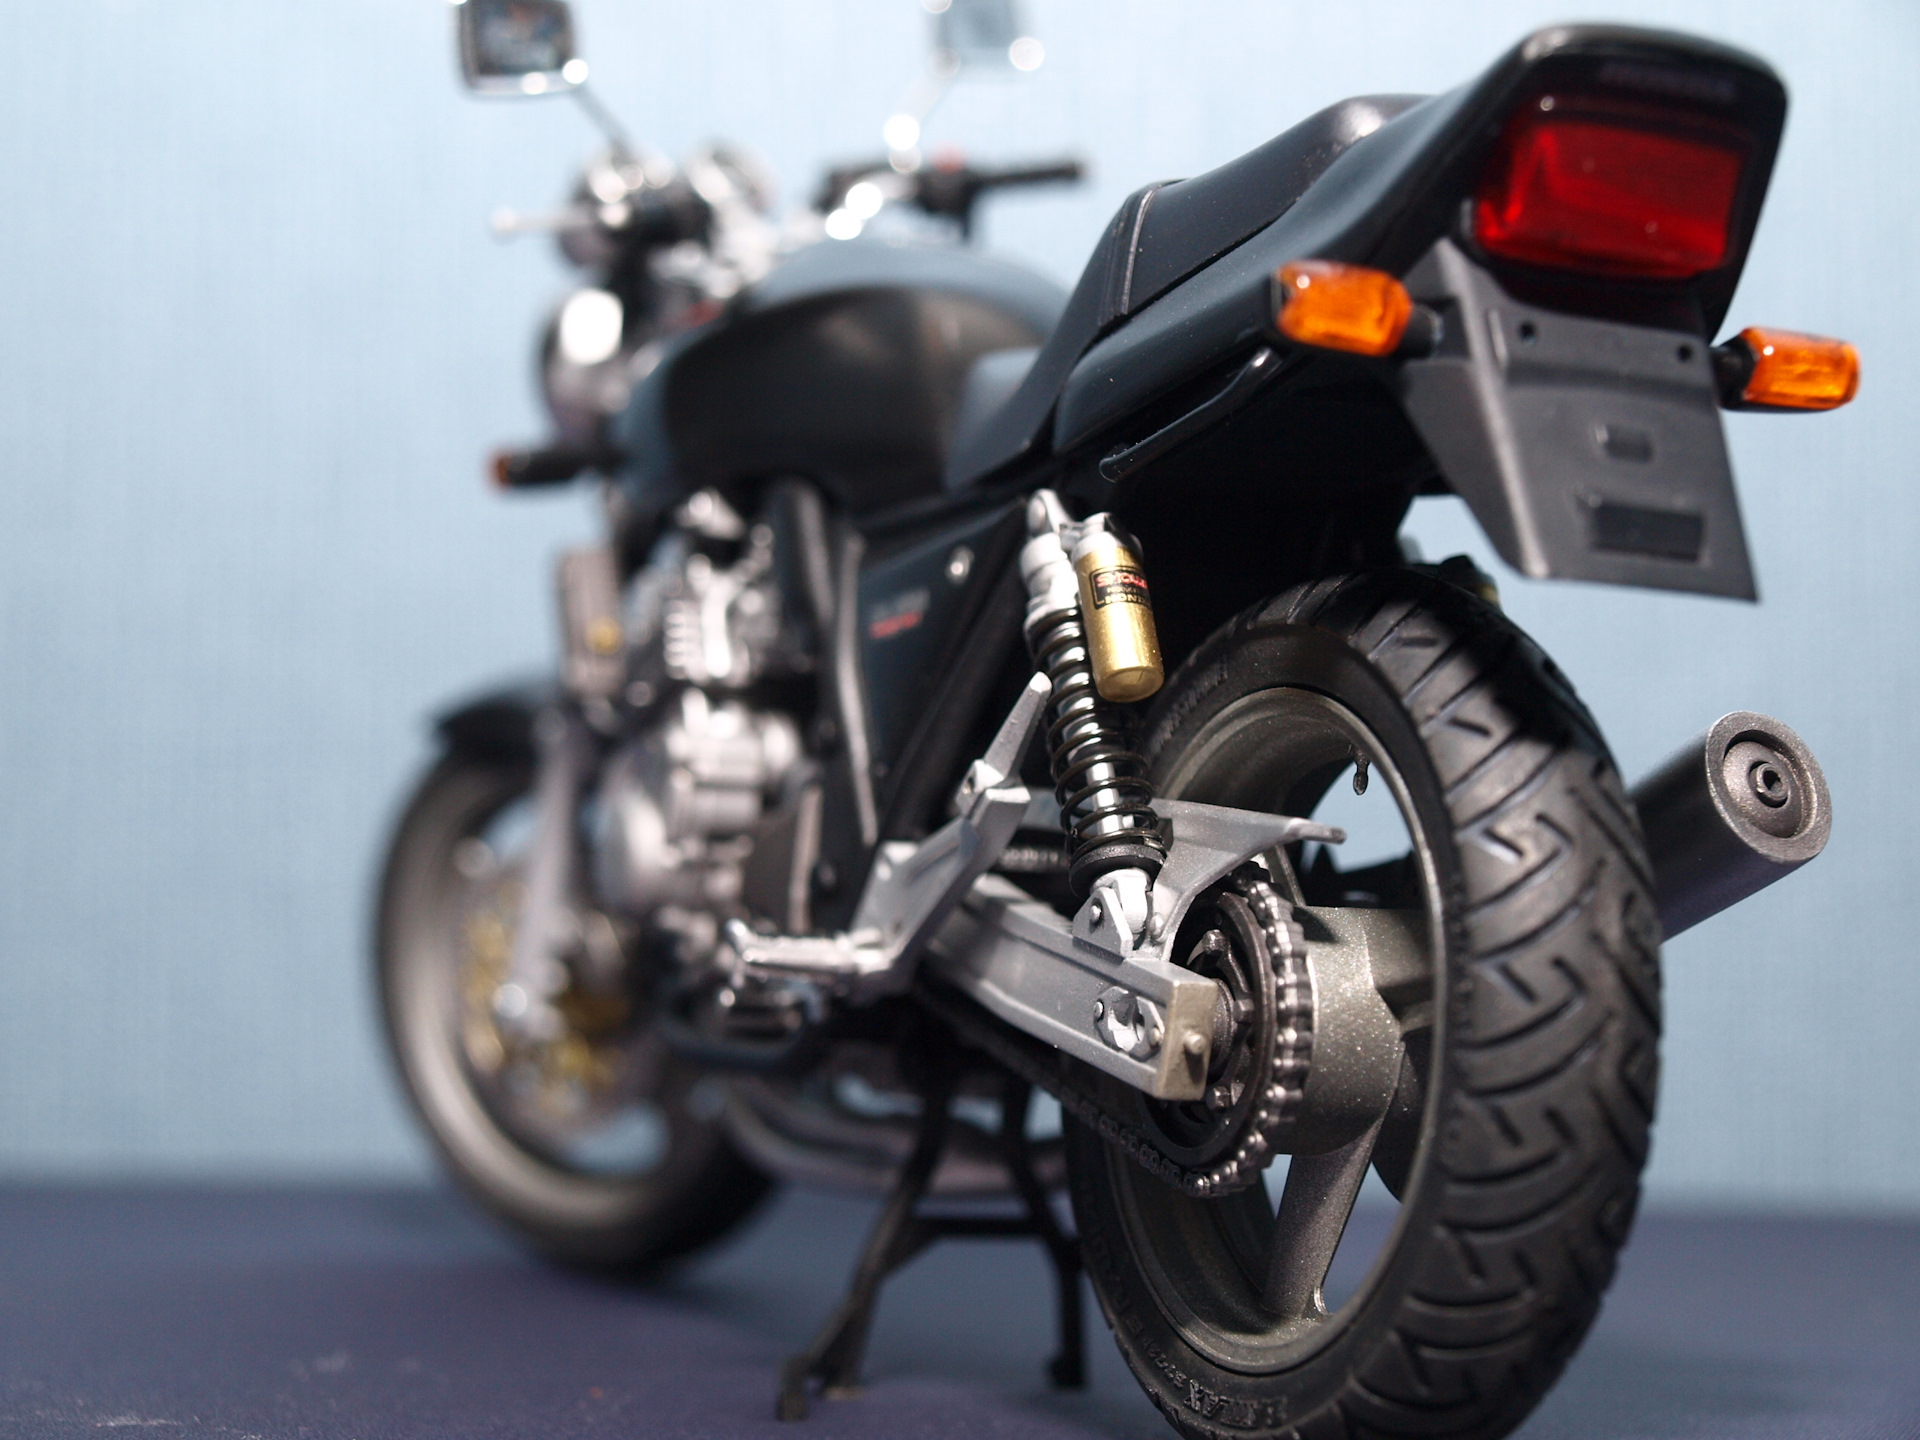 Honda CB 400 тюнинг и полезные советы для доработки